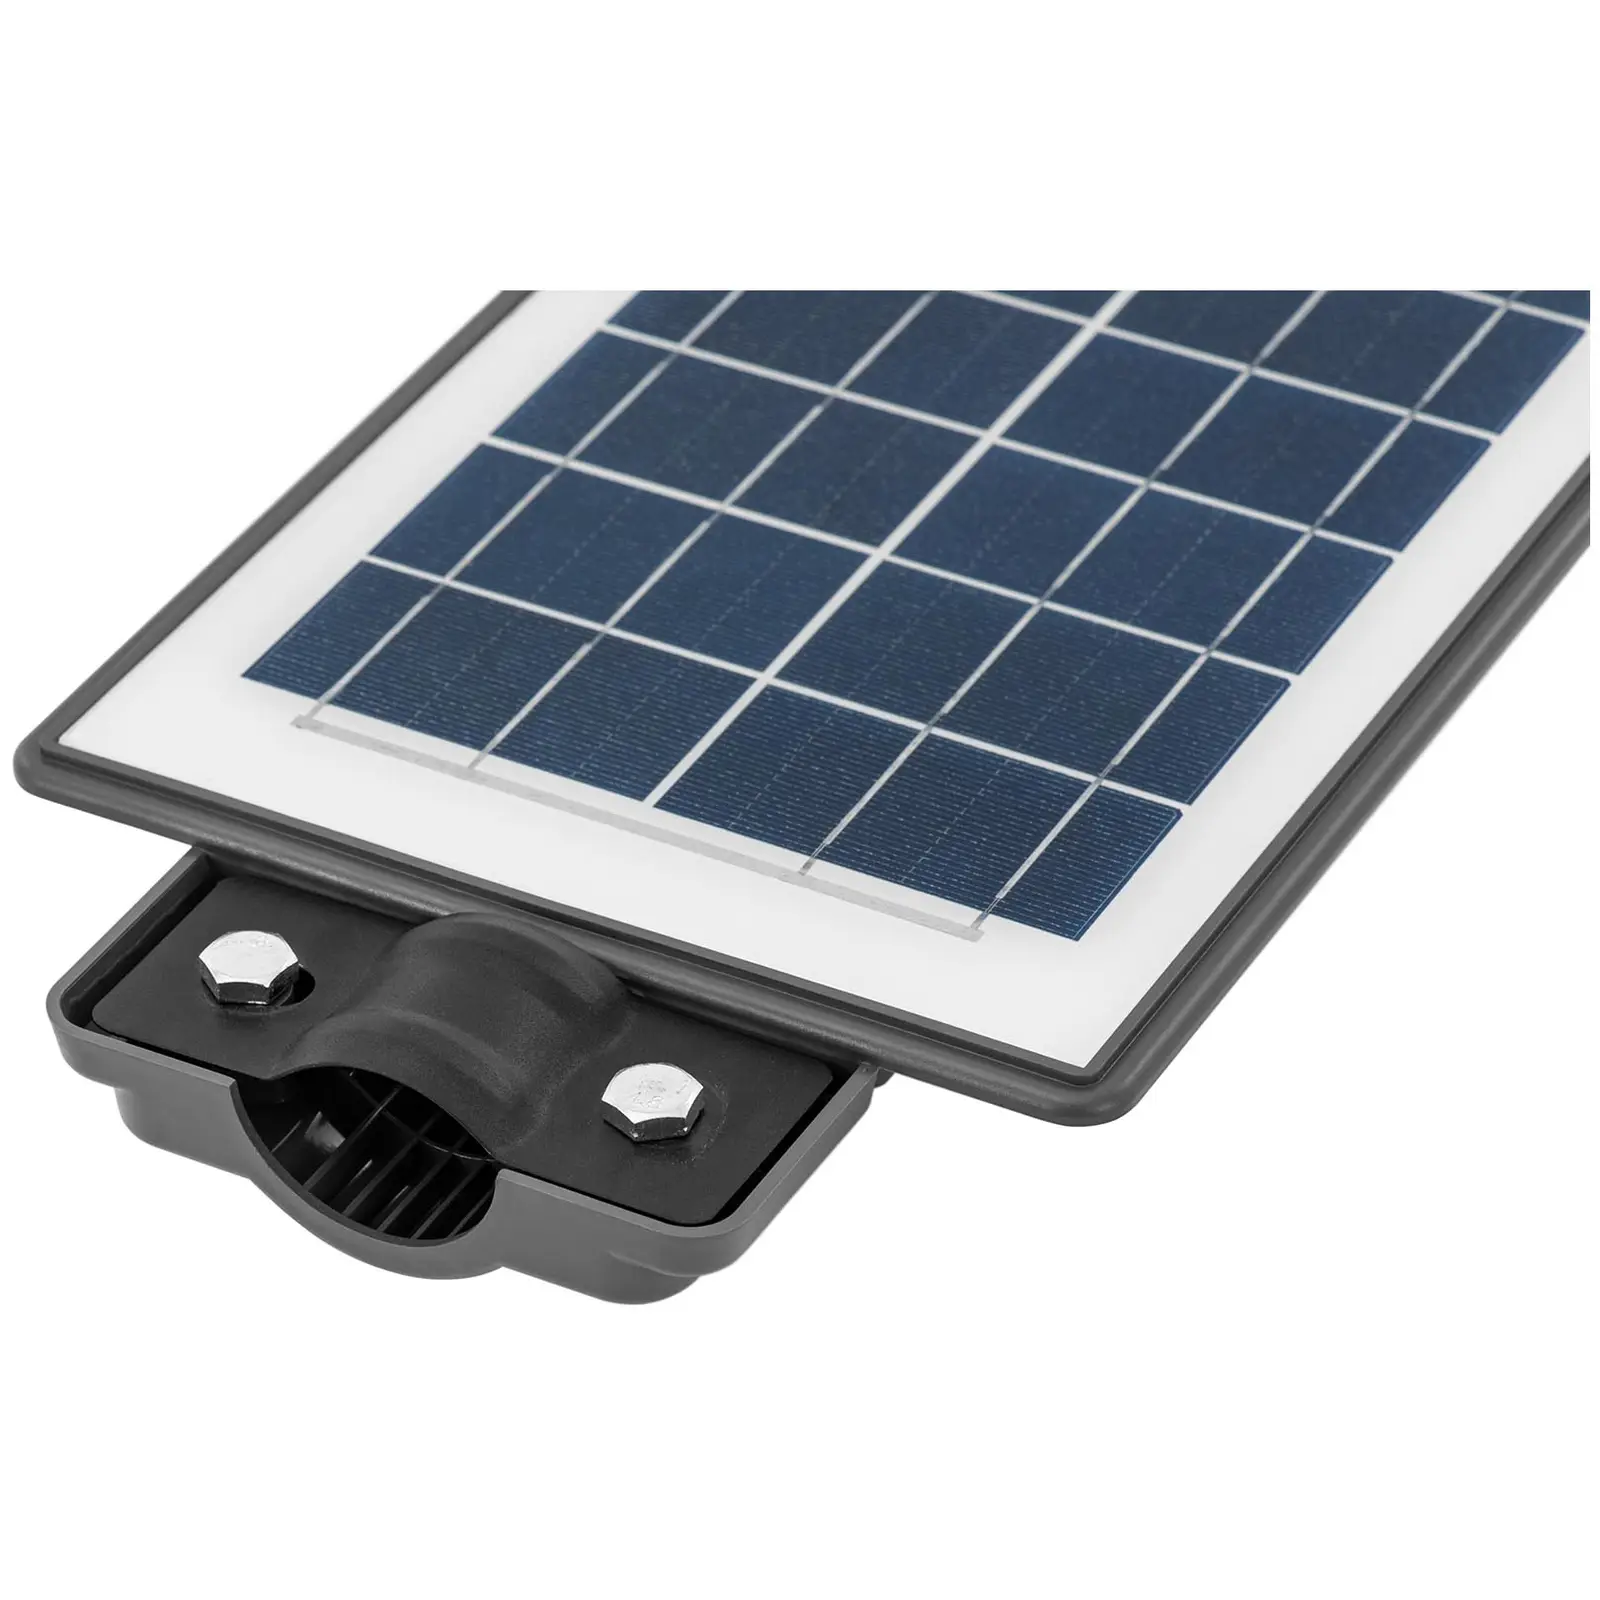 Solar outdoor light - Motion sensor - 100 W - 6000 - 6500 K - 14 - 16 h - IP 54